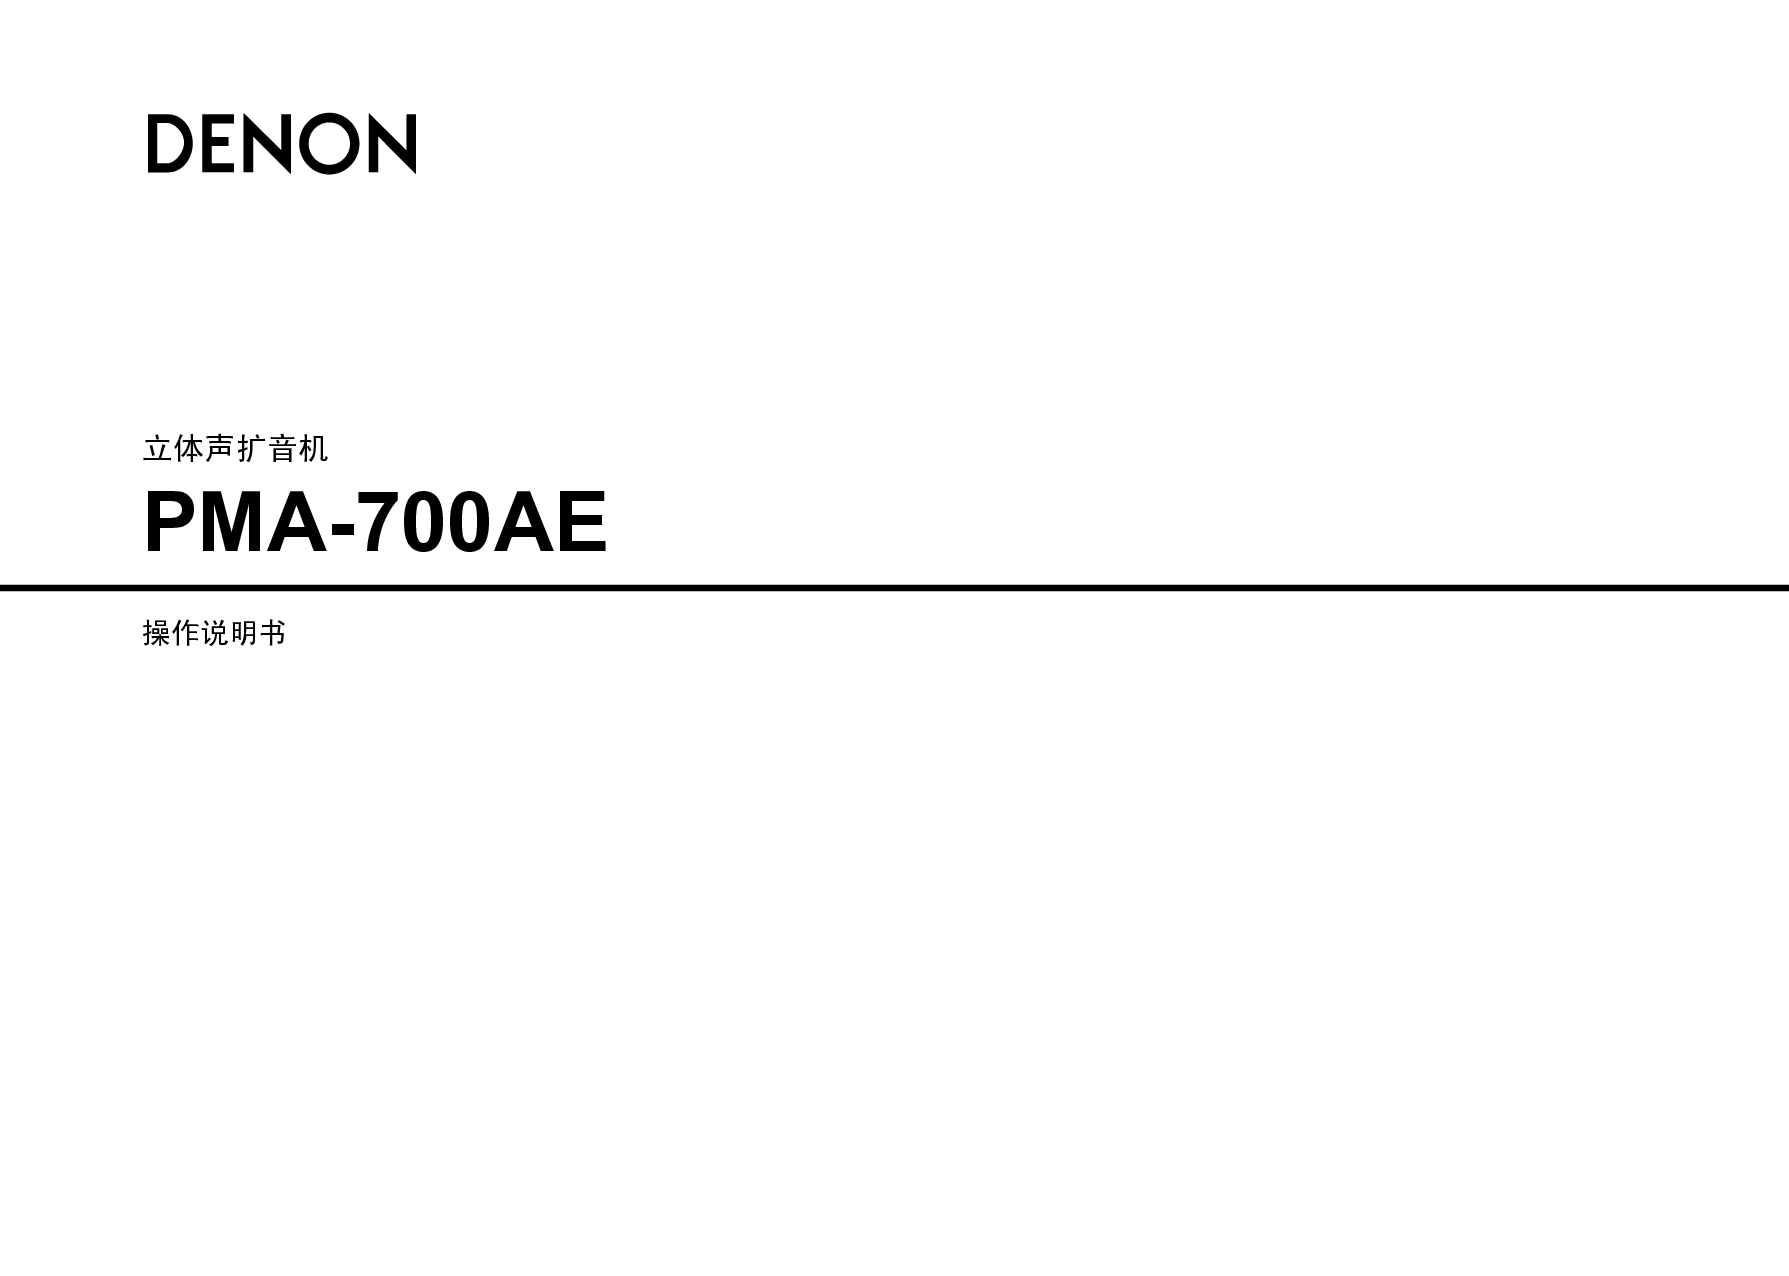 天龙 Denon PMA-700AE 说明书 封面